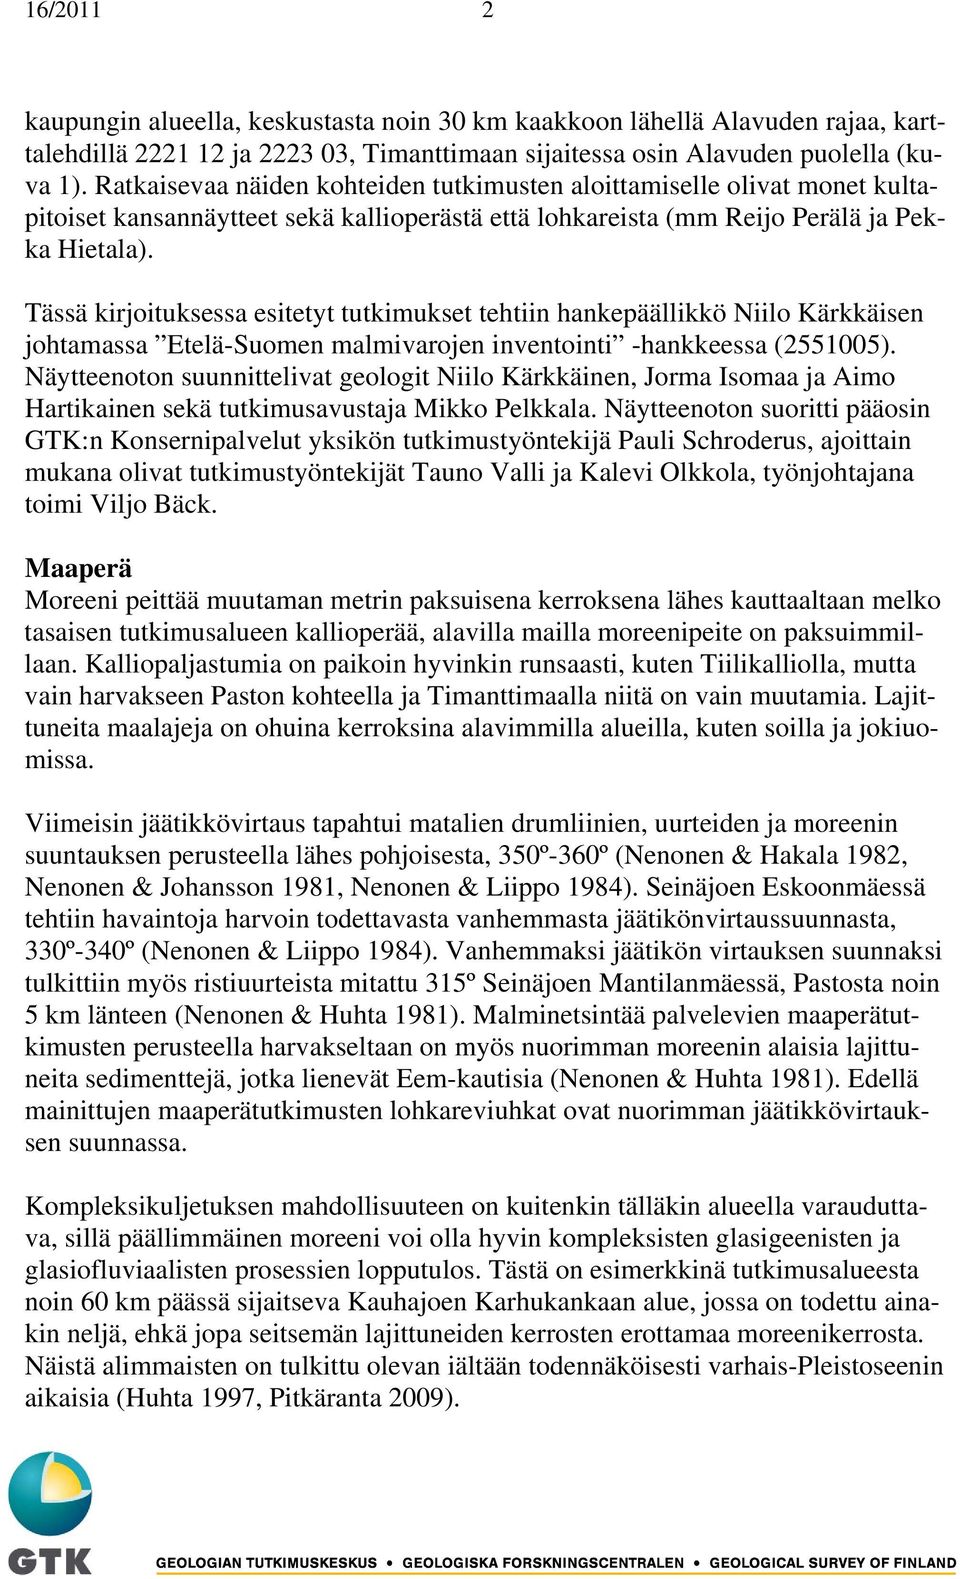 Tässä kirjoituksessa esitetyt tutkimukset tehtiin hankepäällikkö Niilo Kärkkäisen johtamassa Etelä-Suomen malmivarojen inventointi -hankkeessa (2551005).